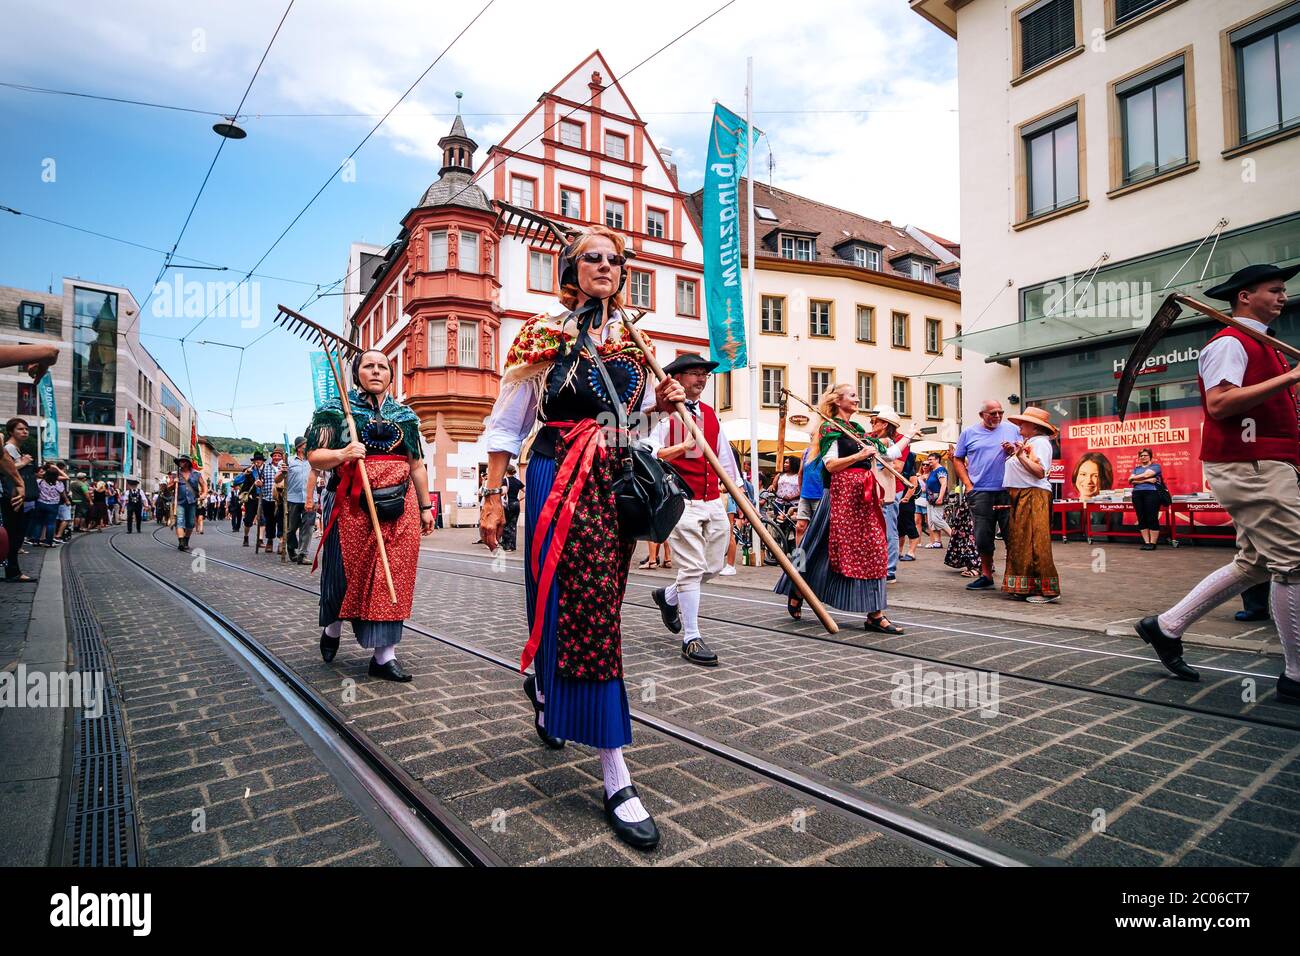 Des personnes présentant les tenues traditionnelles colorées et portant des outils de récolte typiques au défilé d'ouverture du festival d'été de Kiliani en Bavière. Banque D'Images